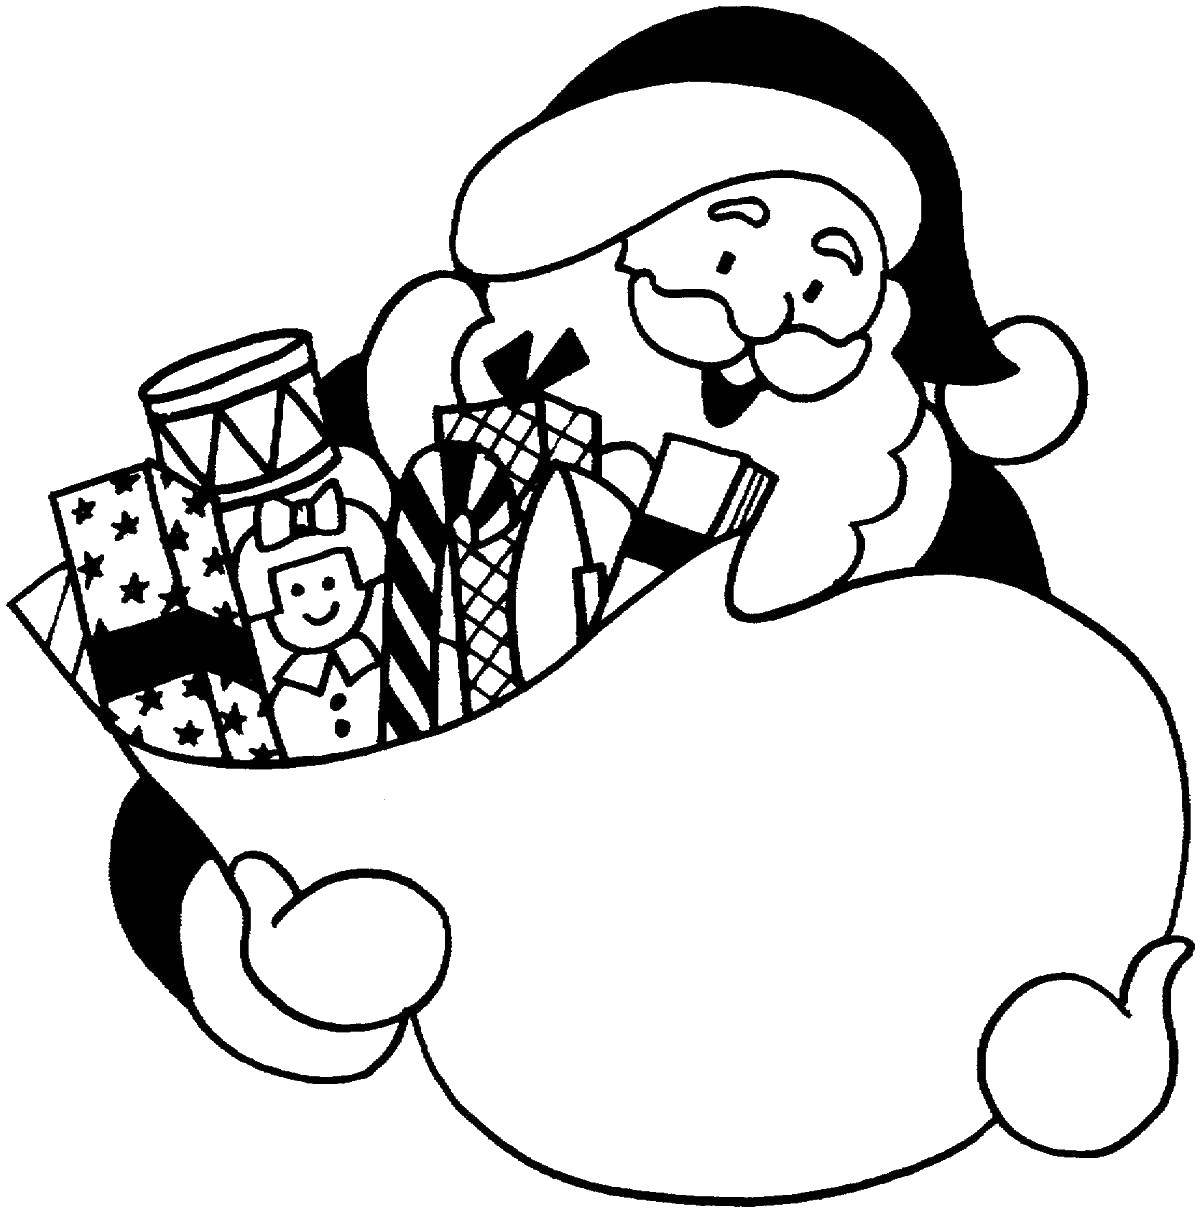 Название: Раскраска Санта клаус с мешком подарками. Категория: рождество. Теги: Санта Клаус, рождество.